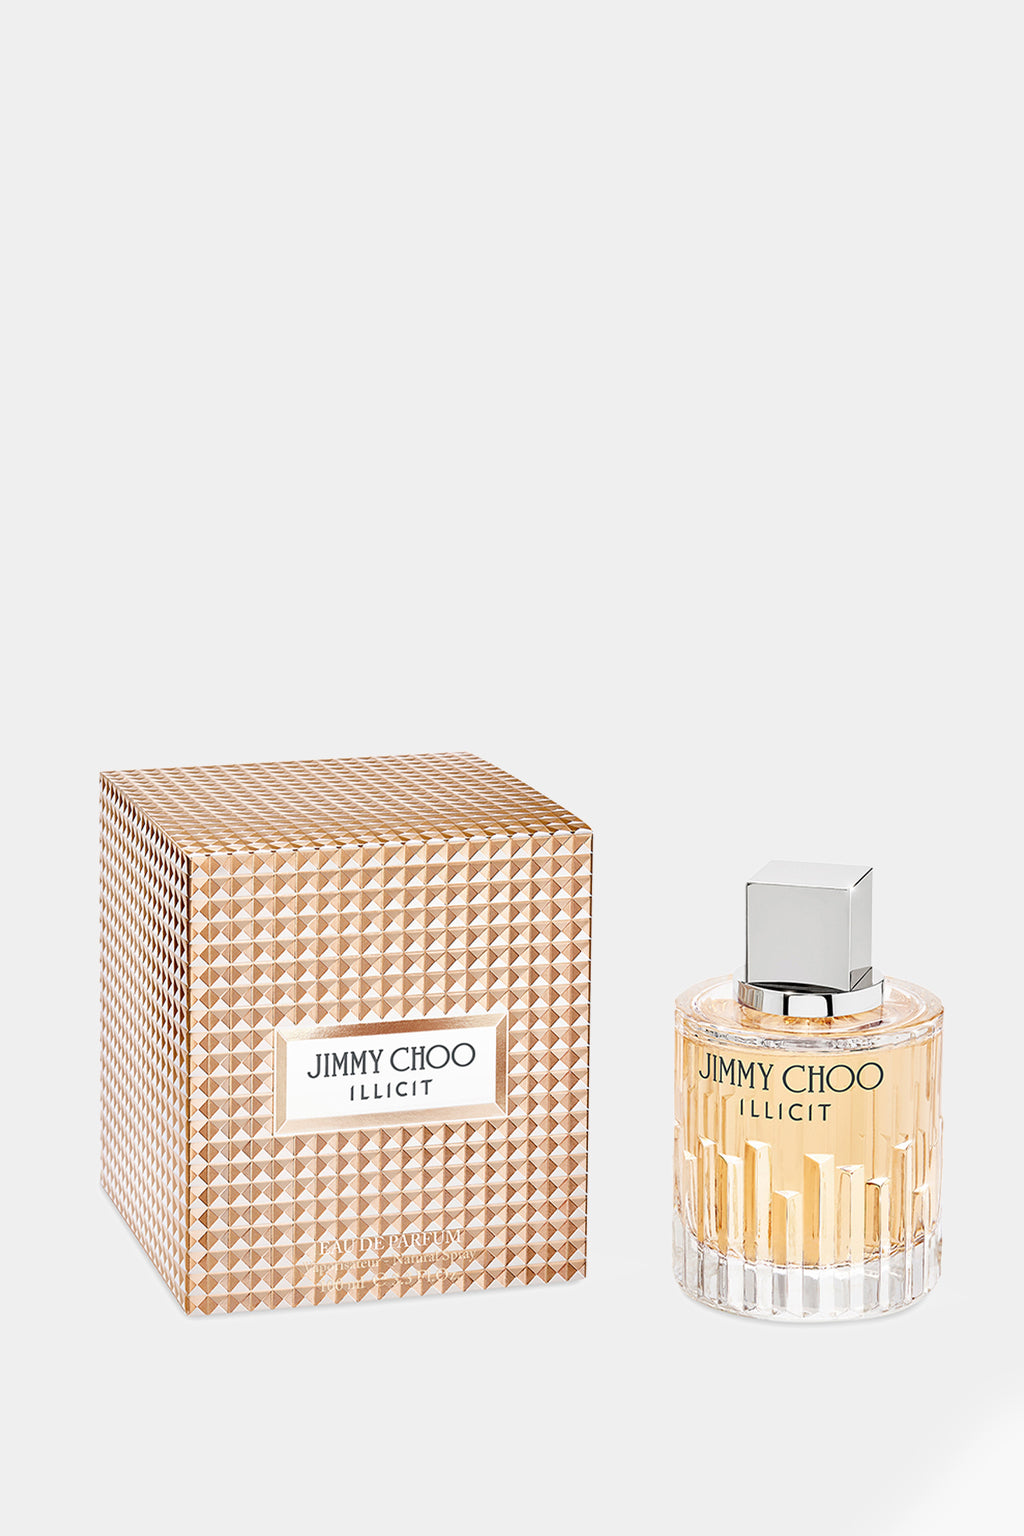 Jimmy Choo - Illicit Eau de Parfum